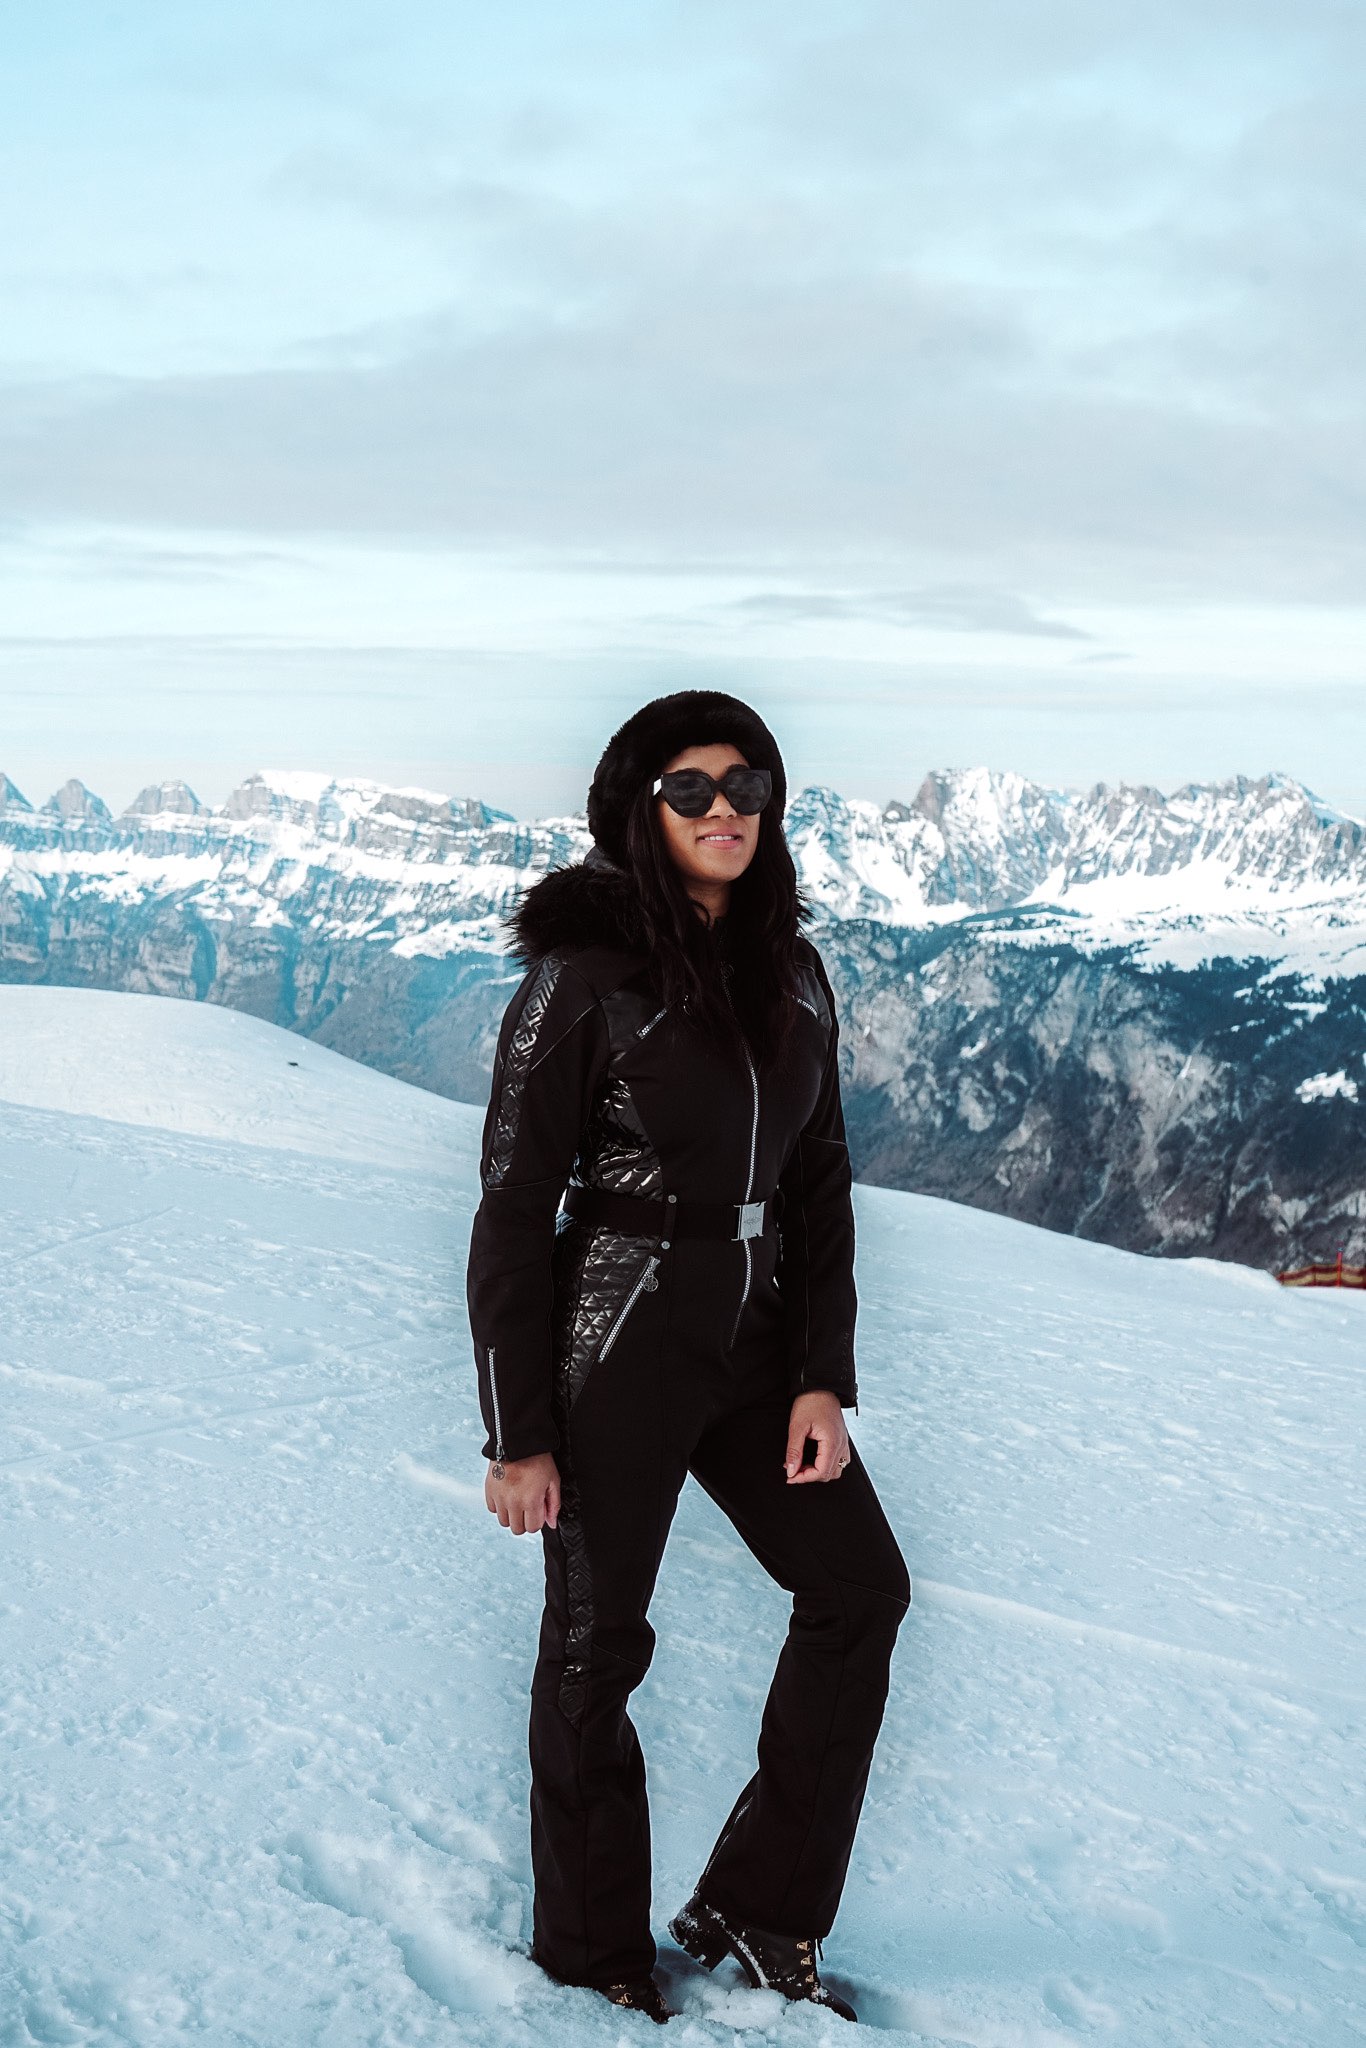 Top Fashion Blogger in Switzerland Ski Photos